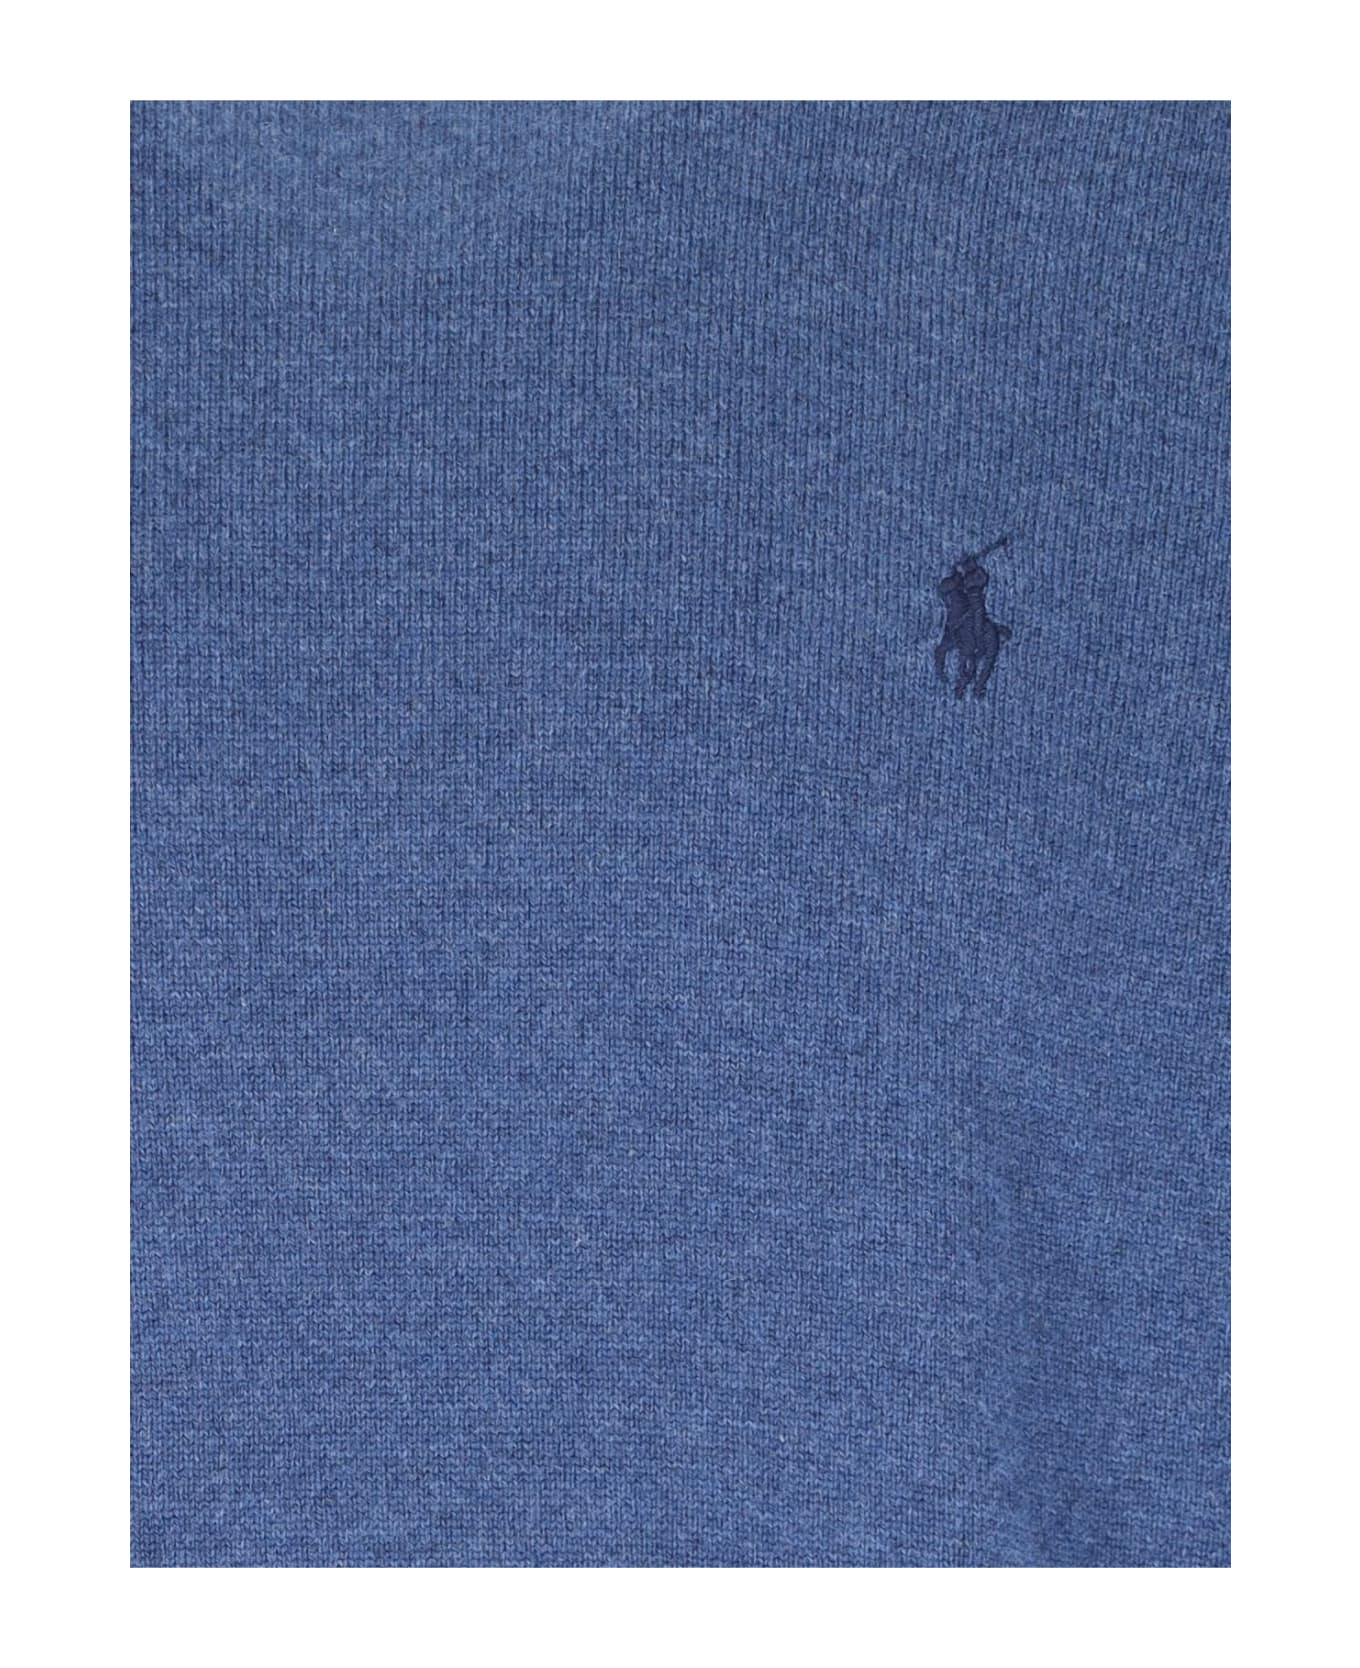 Ralph Lauren Logo Sweater - Blue ニットウェア